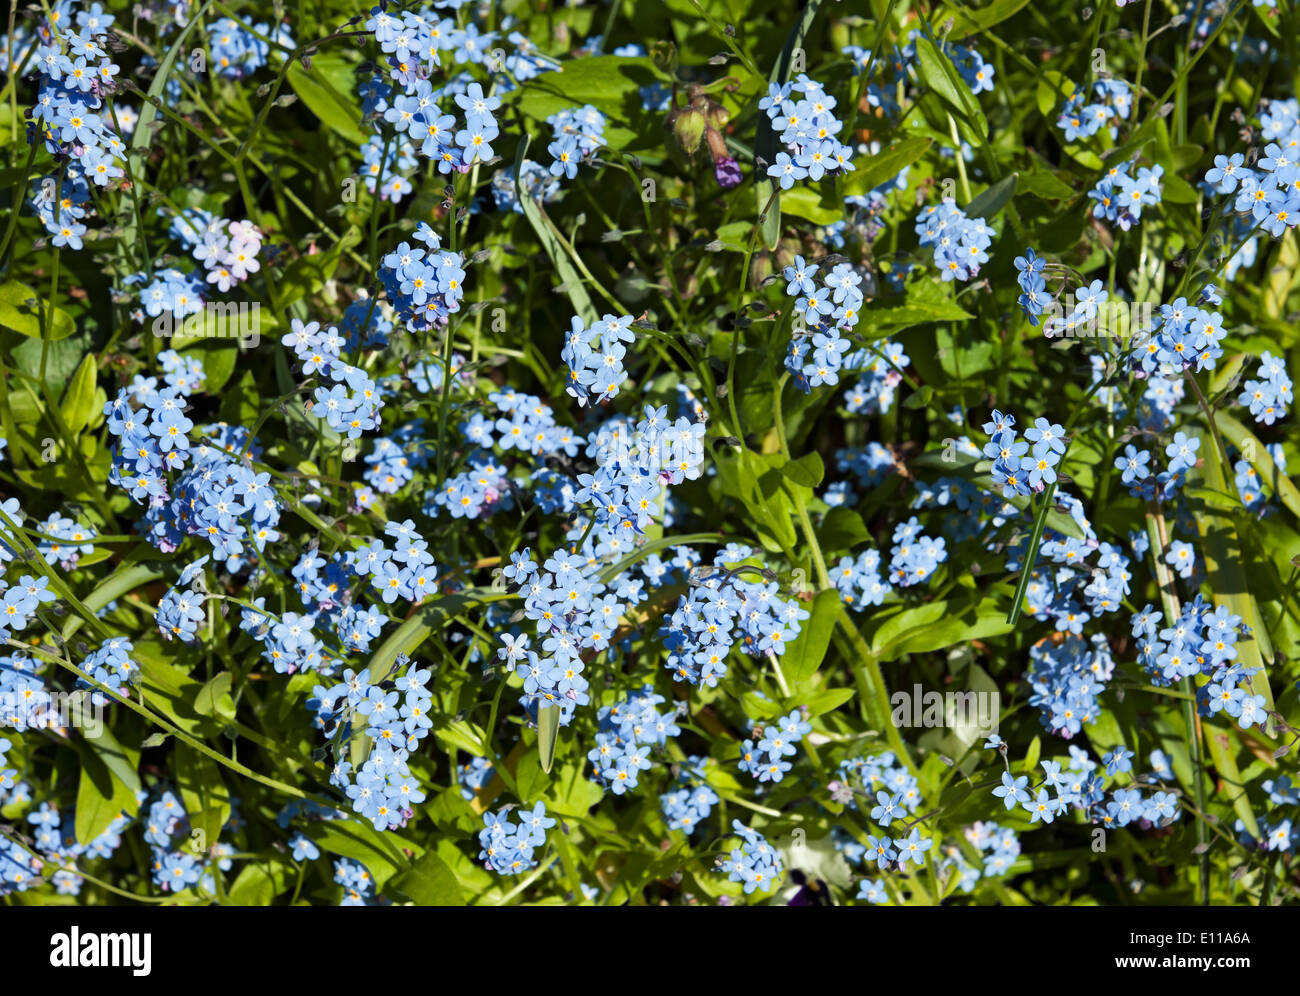 Gros plan de fleurs bleues fleur Forget-me-nots floraison dans le jardin de printemps Angleterre Royaume-Uni Grande-Bretagne Banque D'Images